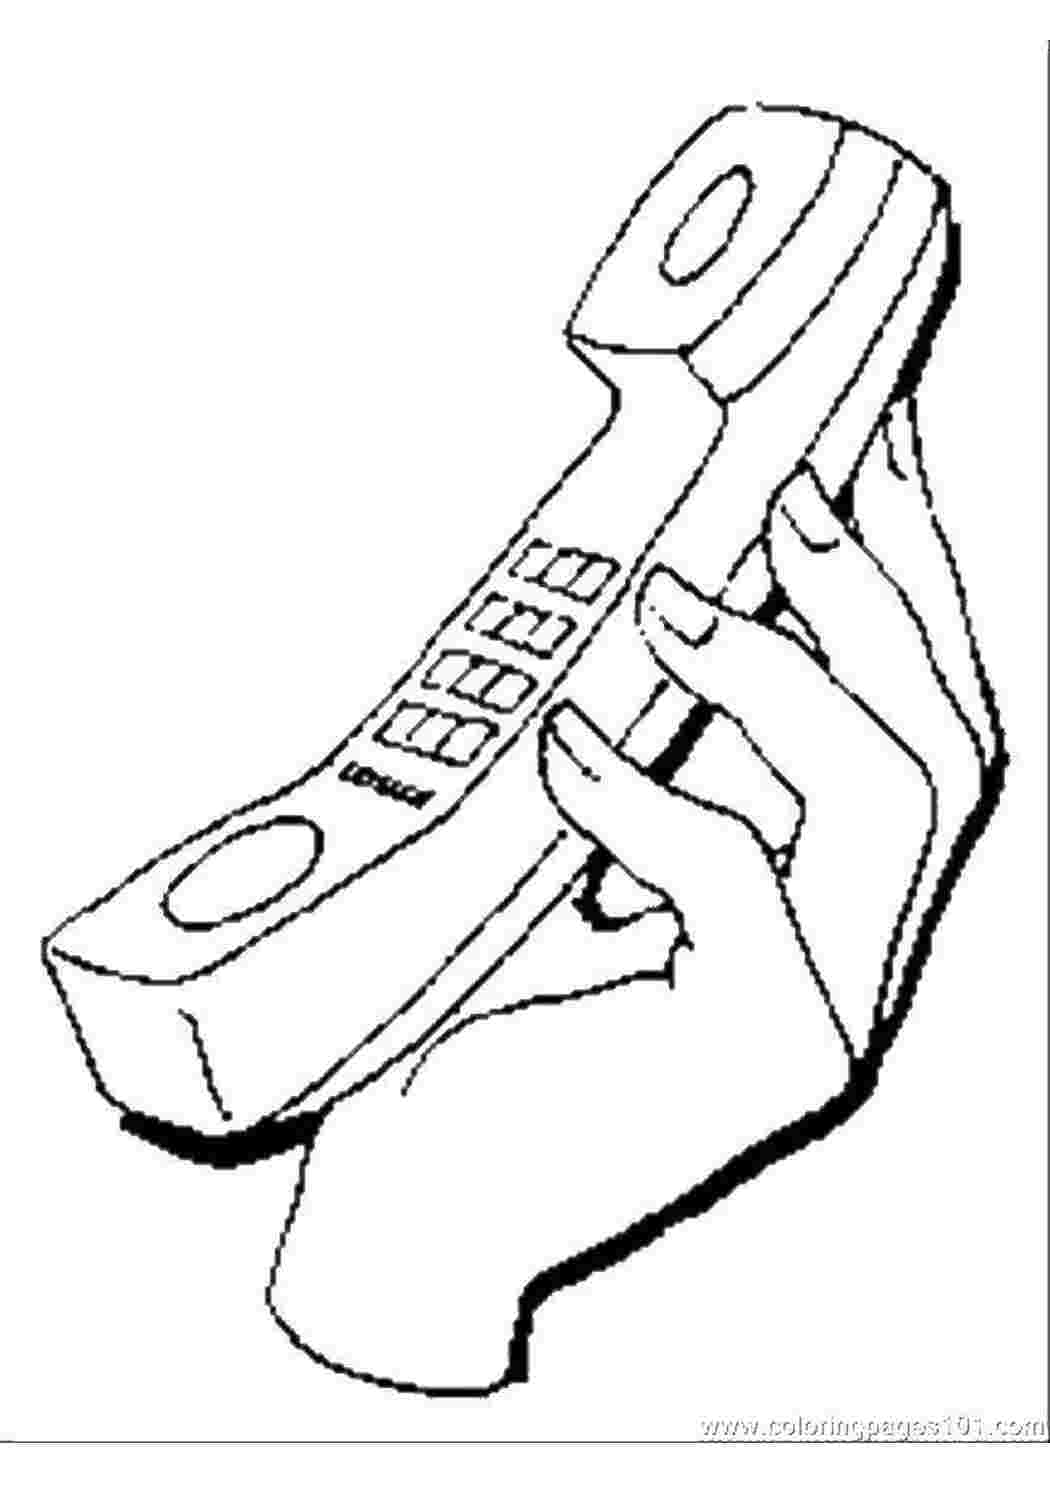 Раскраски Телефон в руке телефон телефон, рука, кнопки